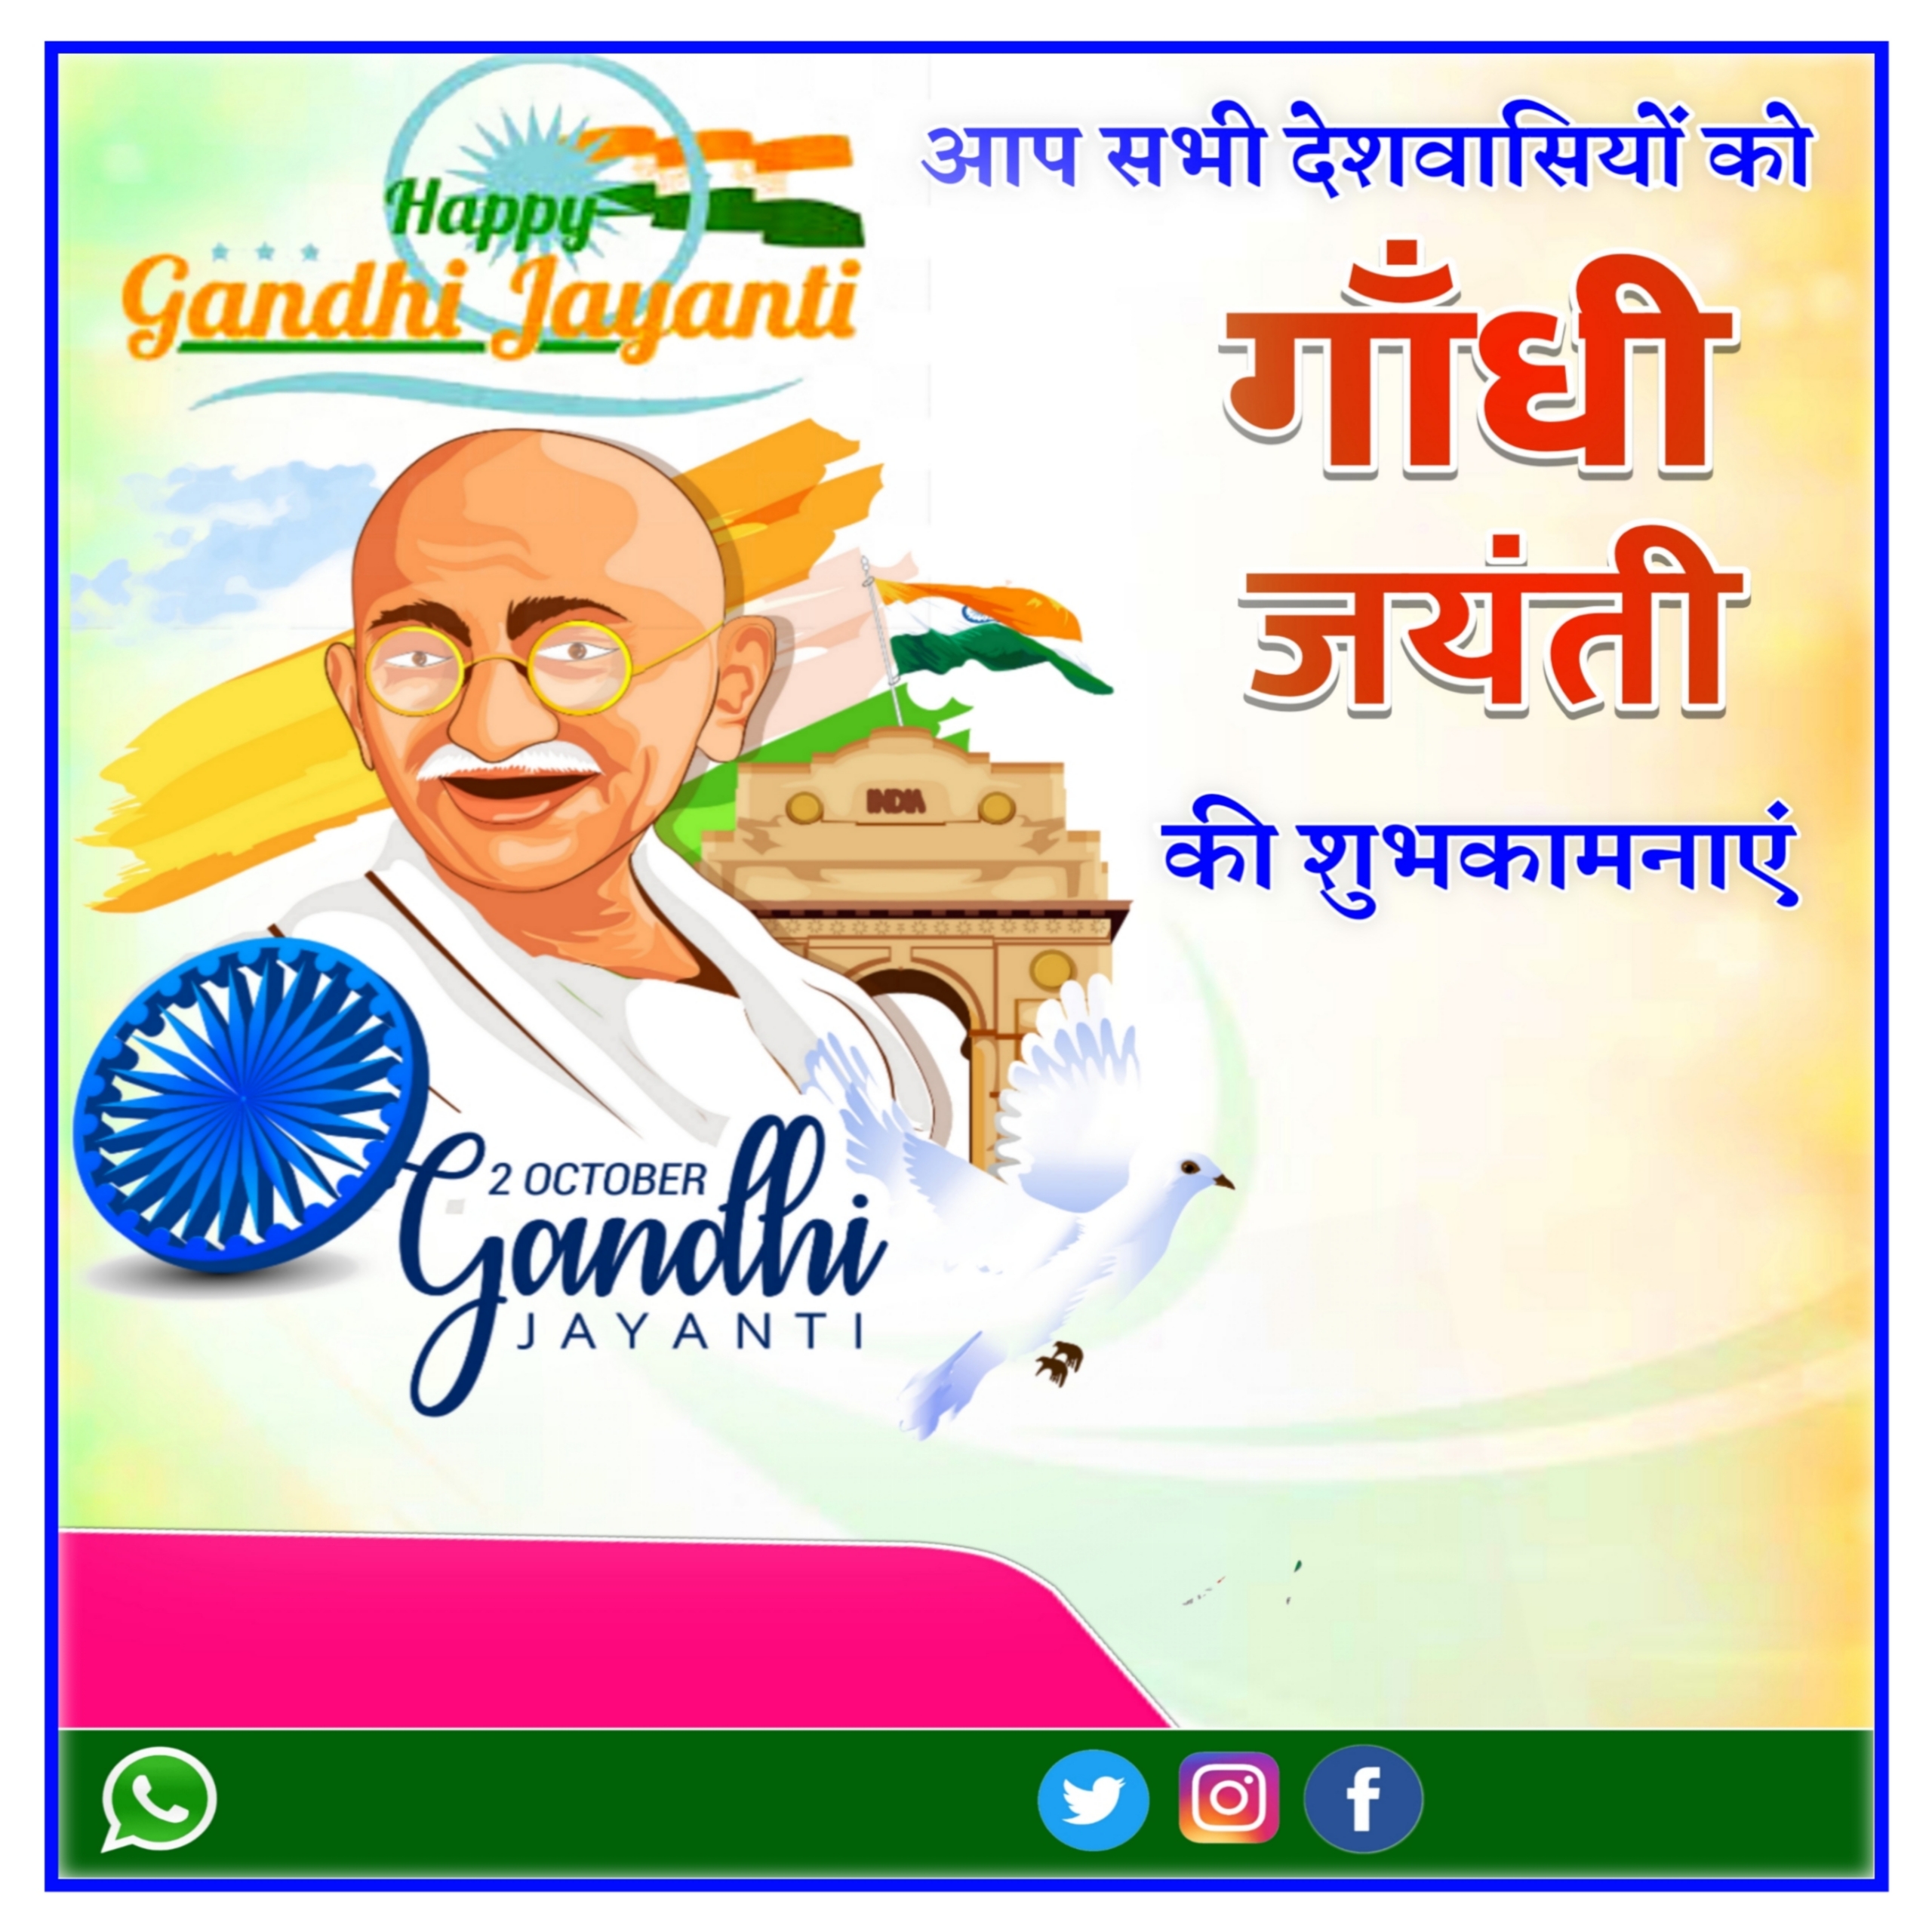 Gandhi Jayanti Poster Background Free Download